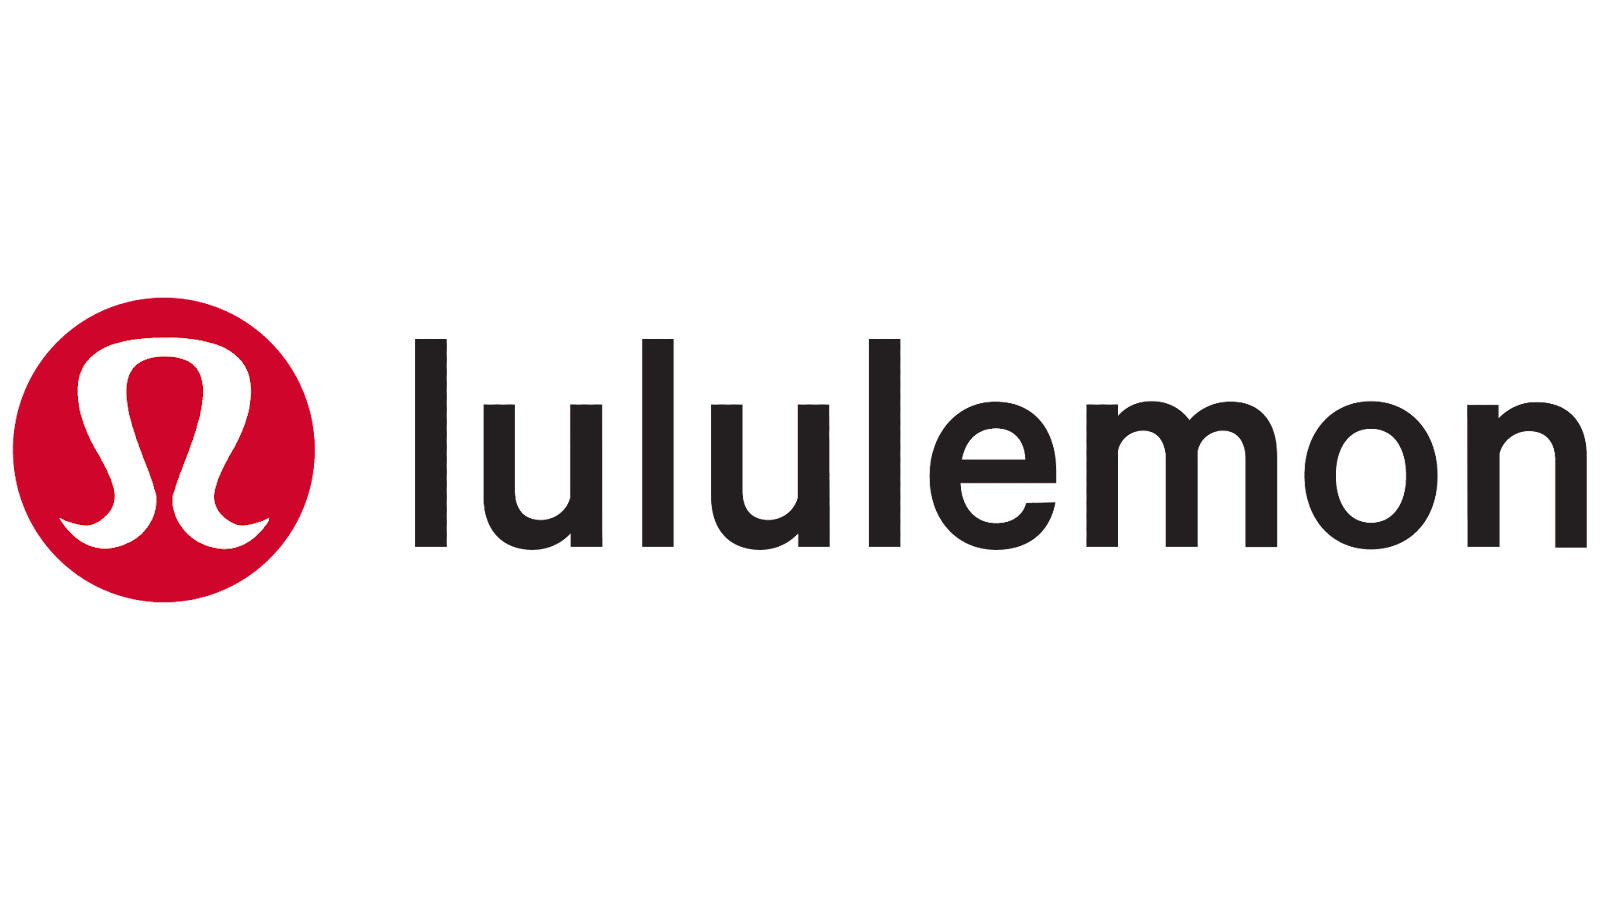 How to Ship Lululemon US Internationally